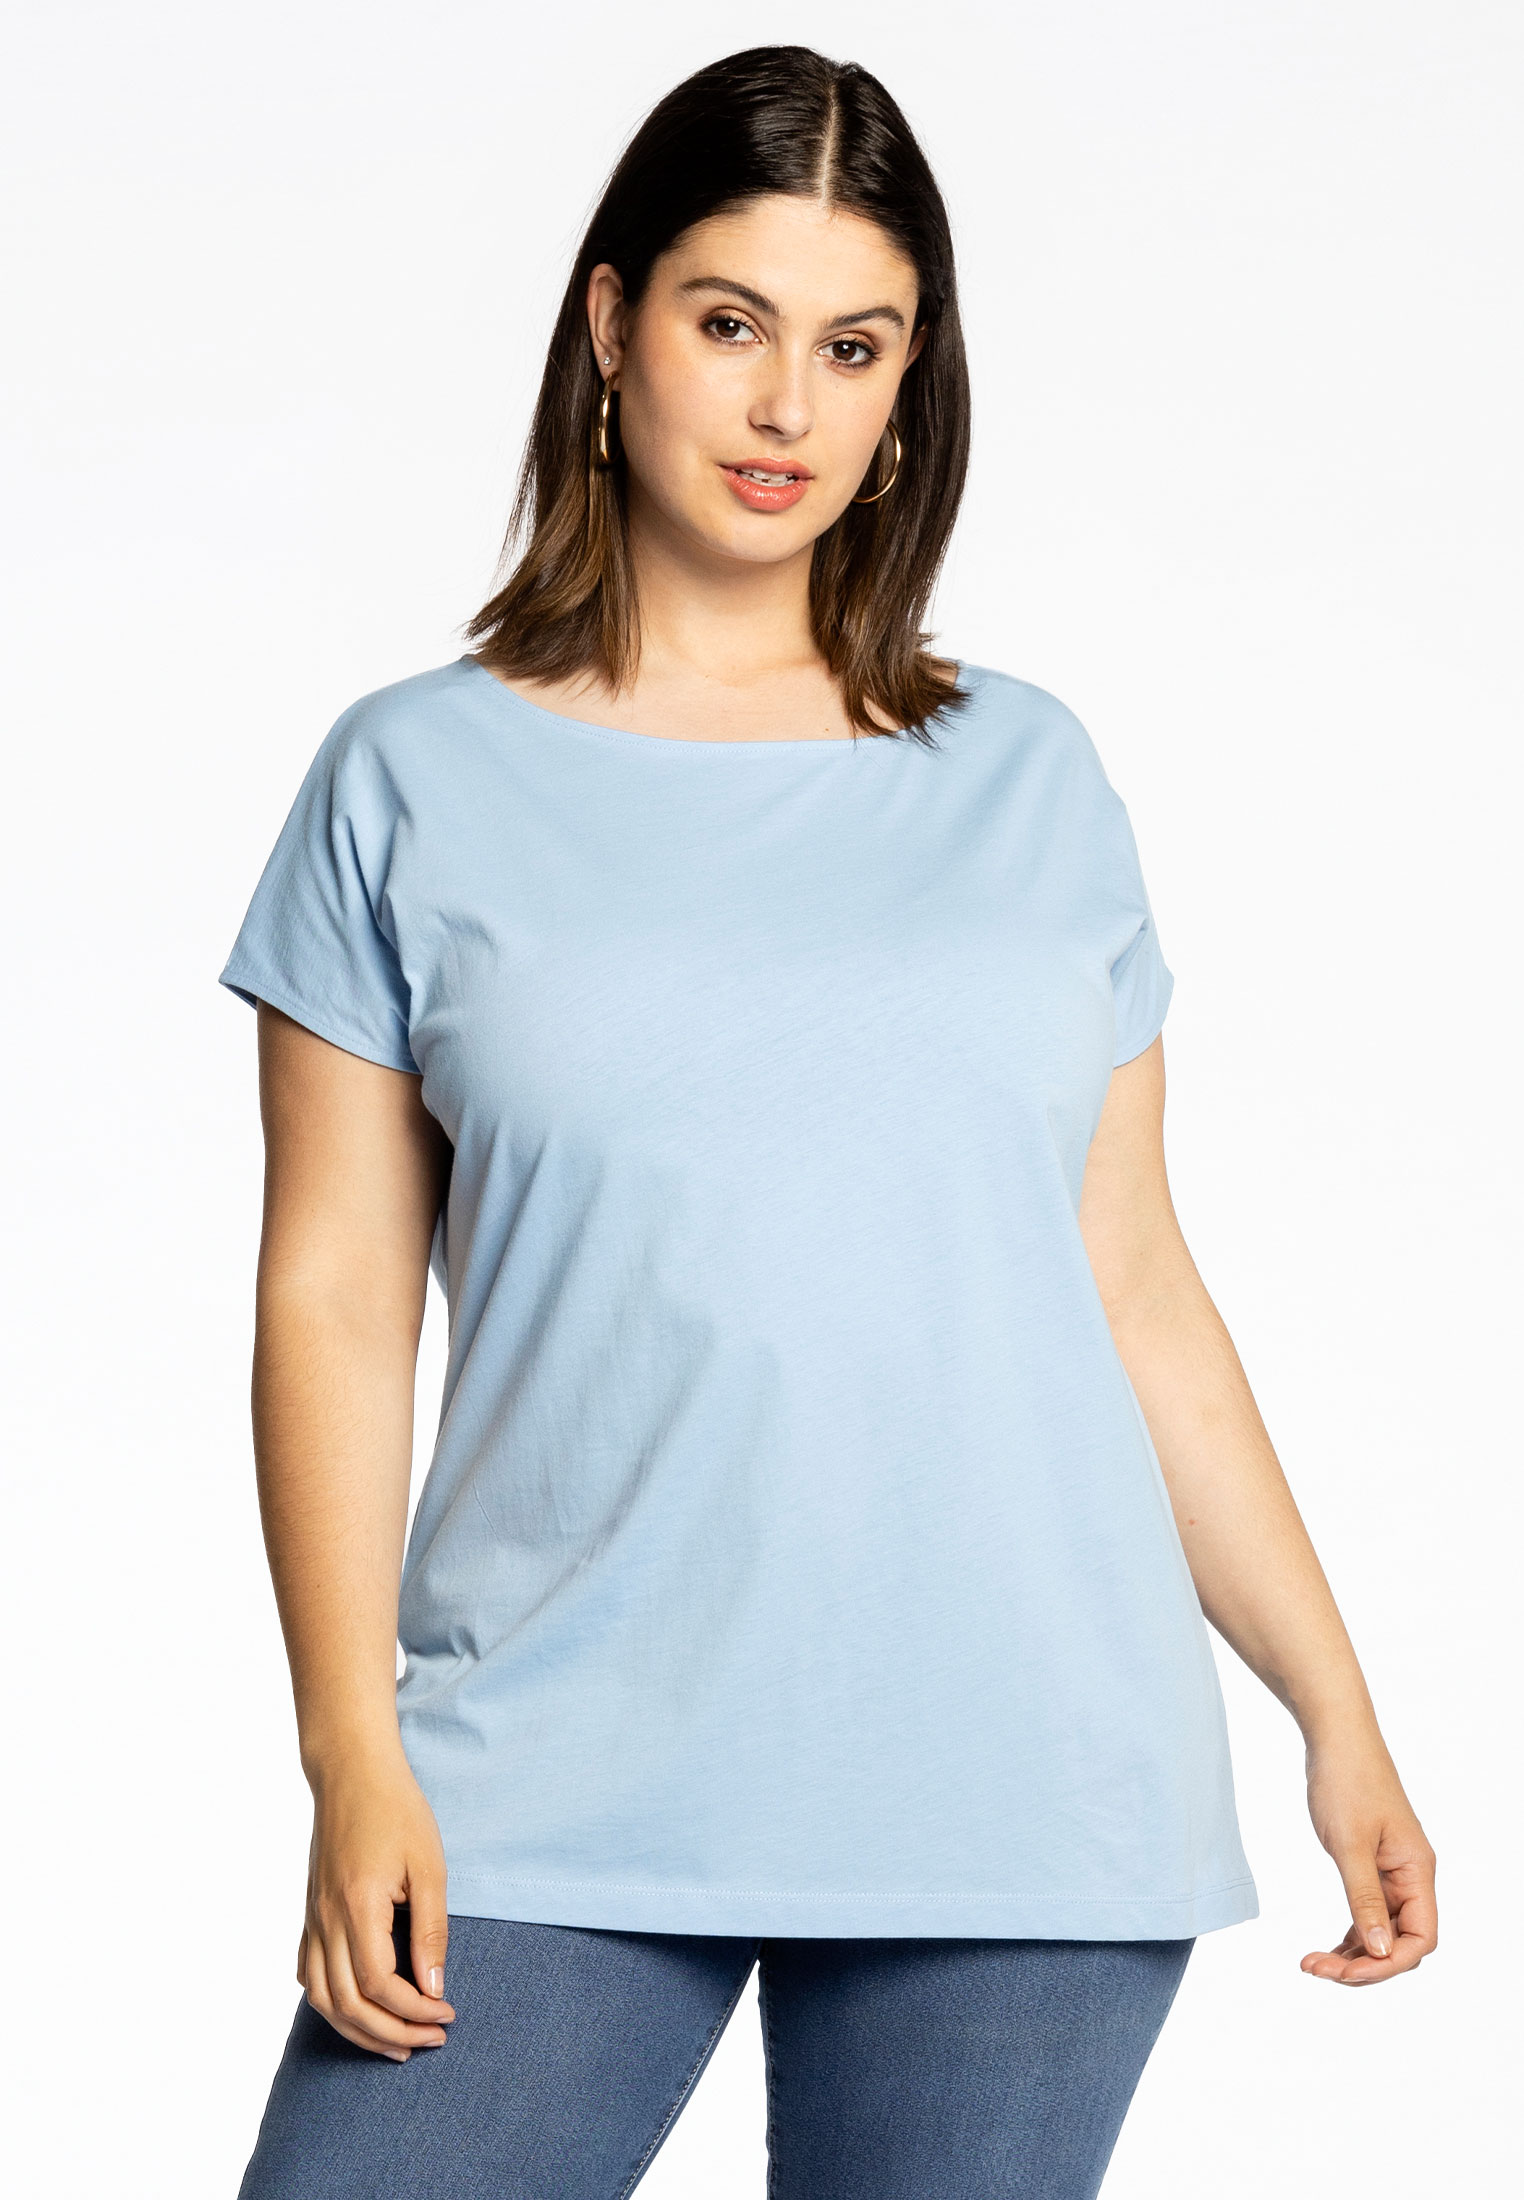 Basic T-shirt kapmouwen COTTON 42/44 light blue